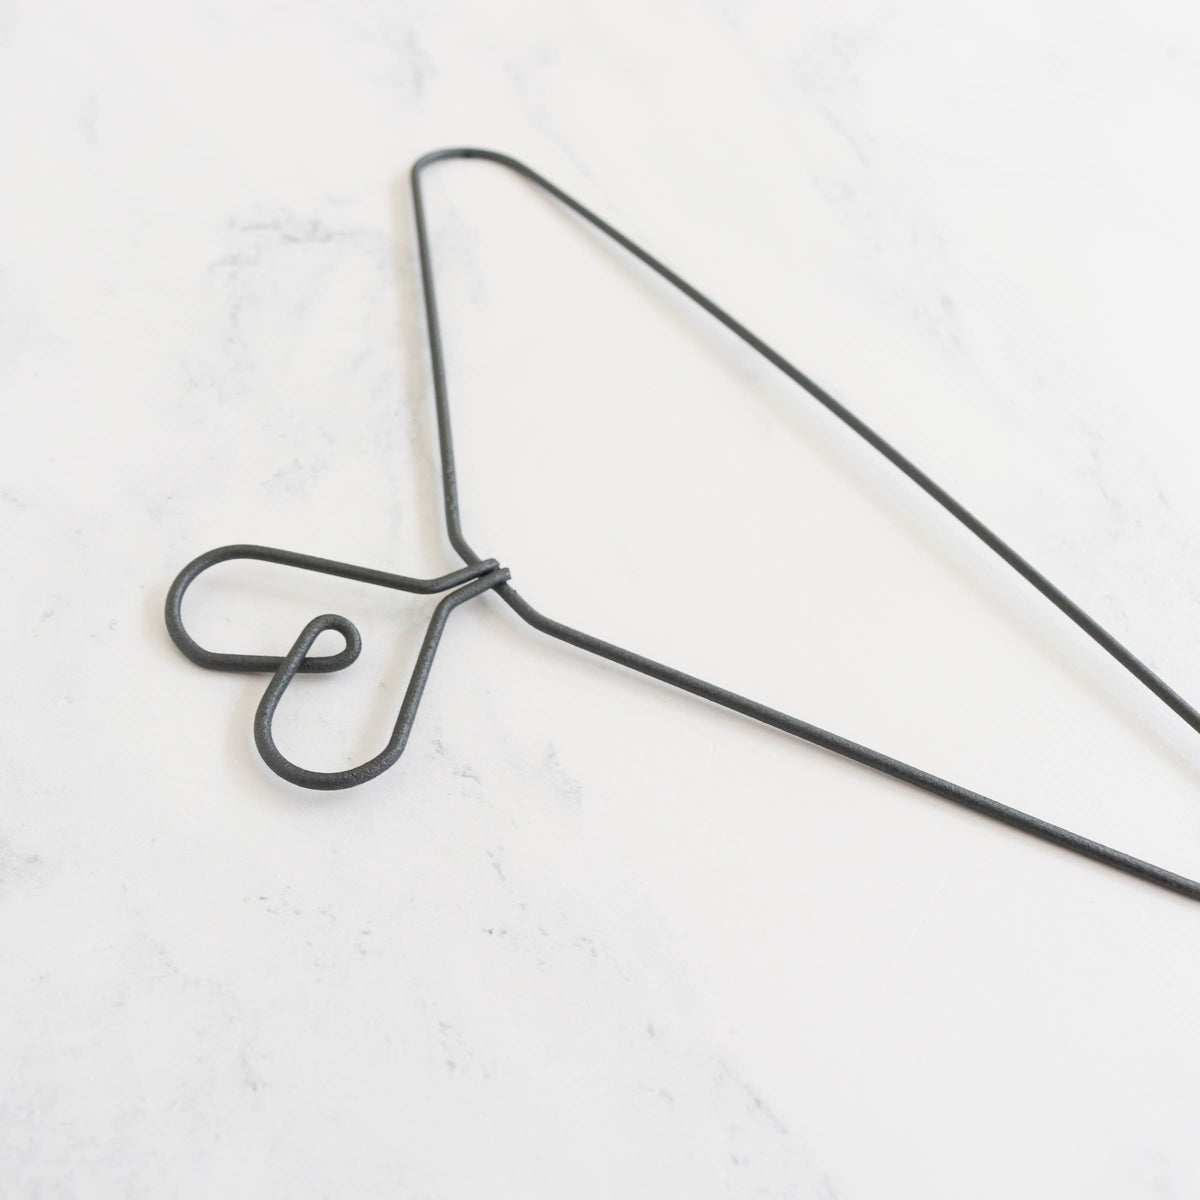 Metal Needlework Hanger with Heart Top